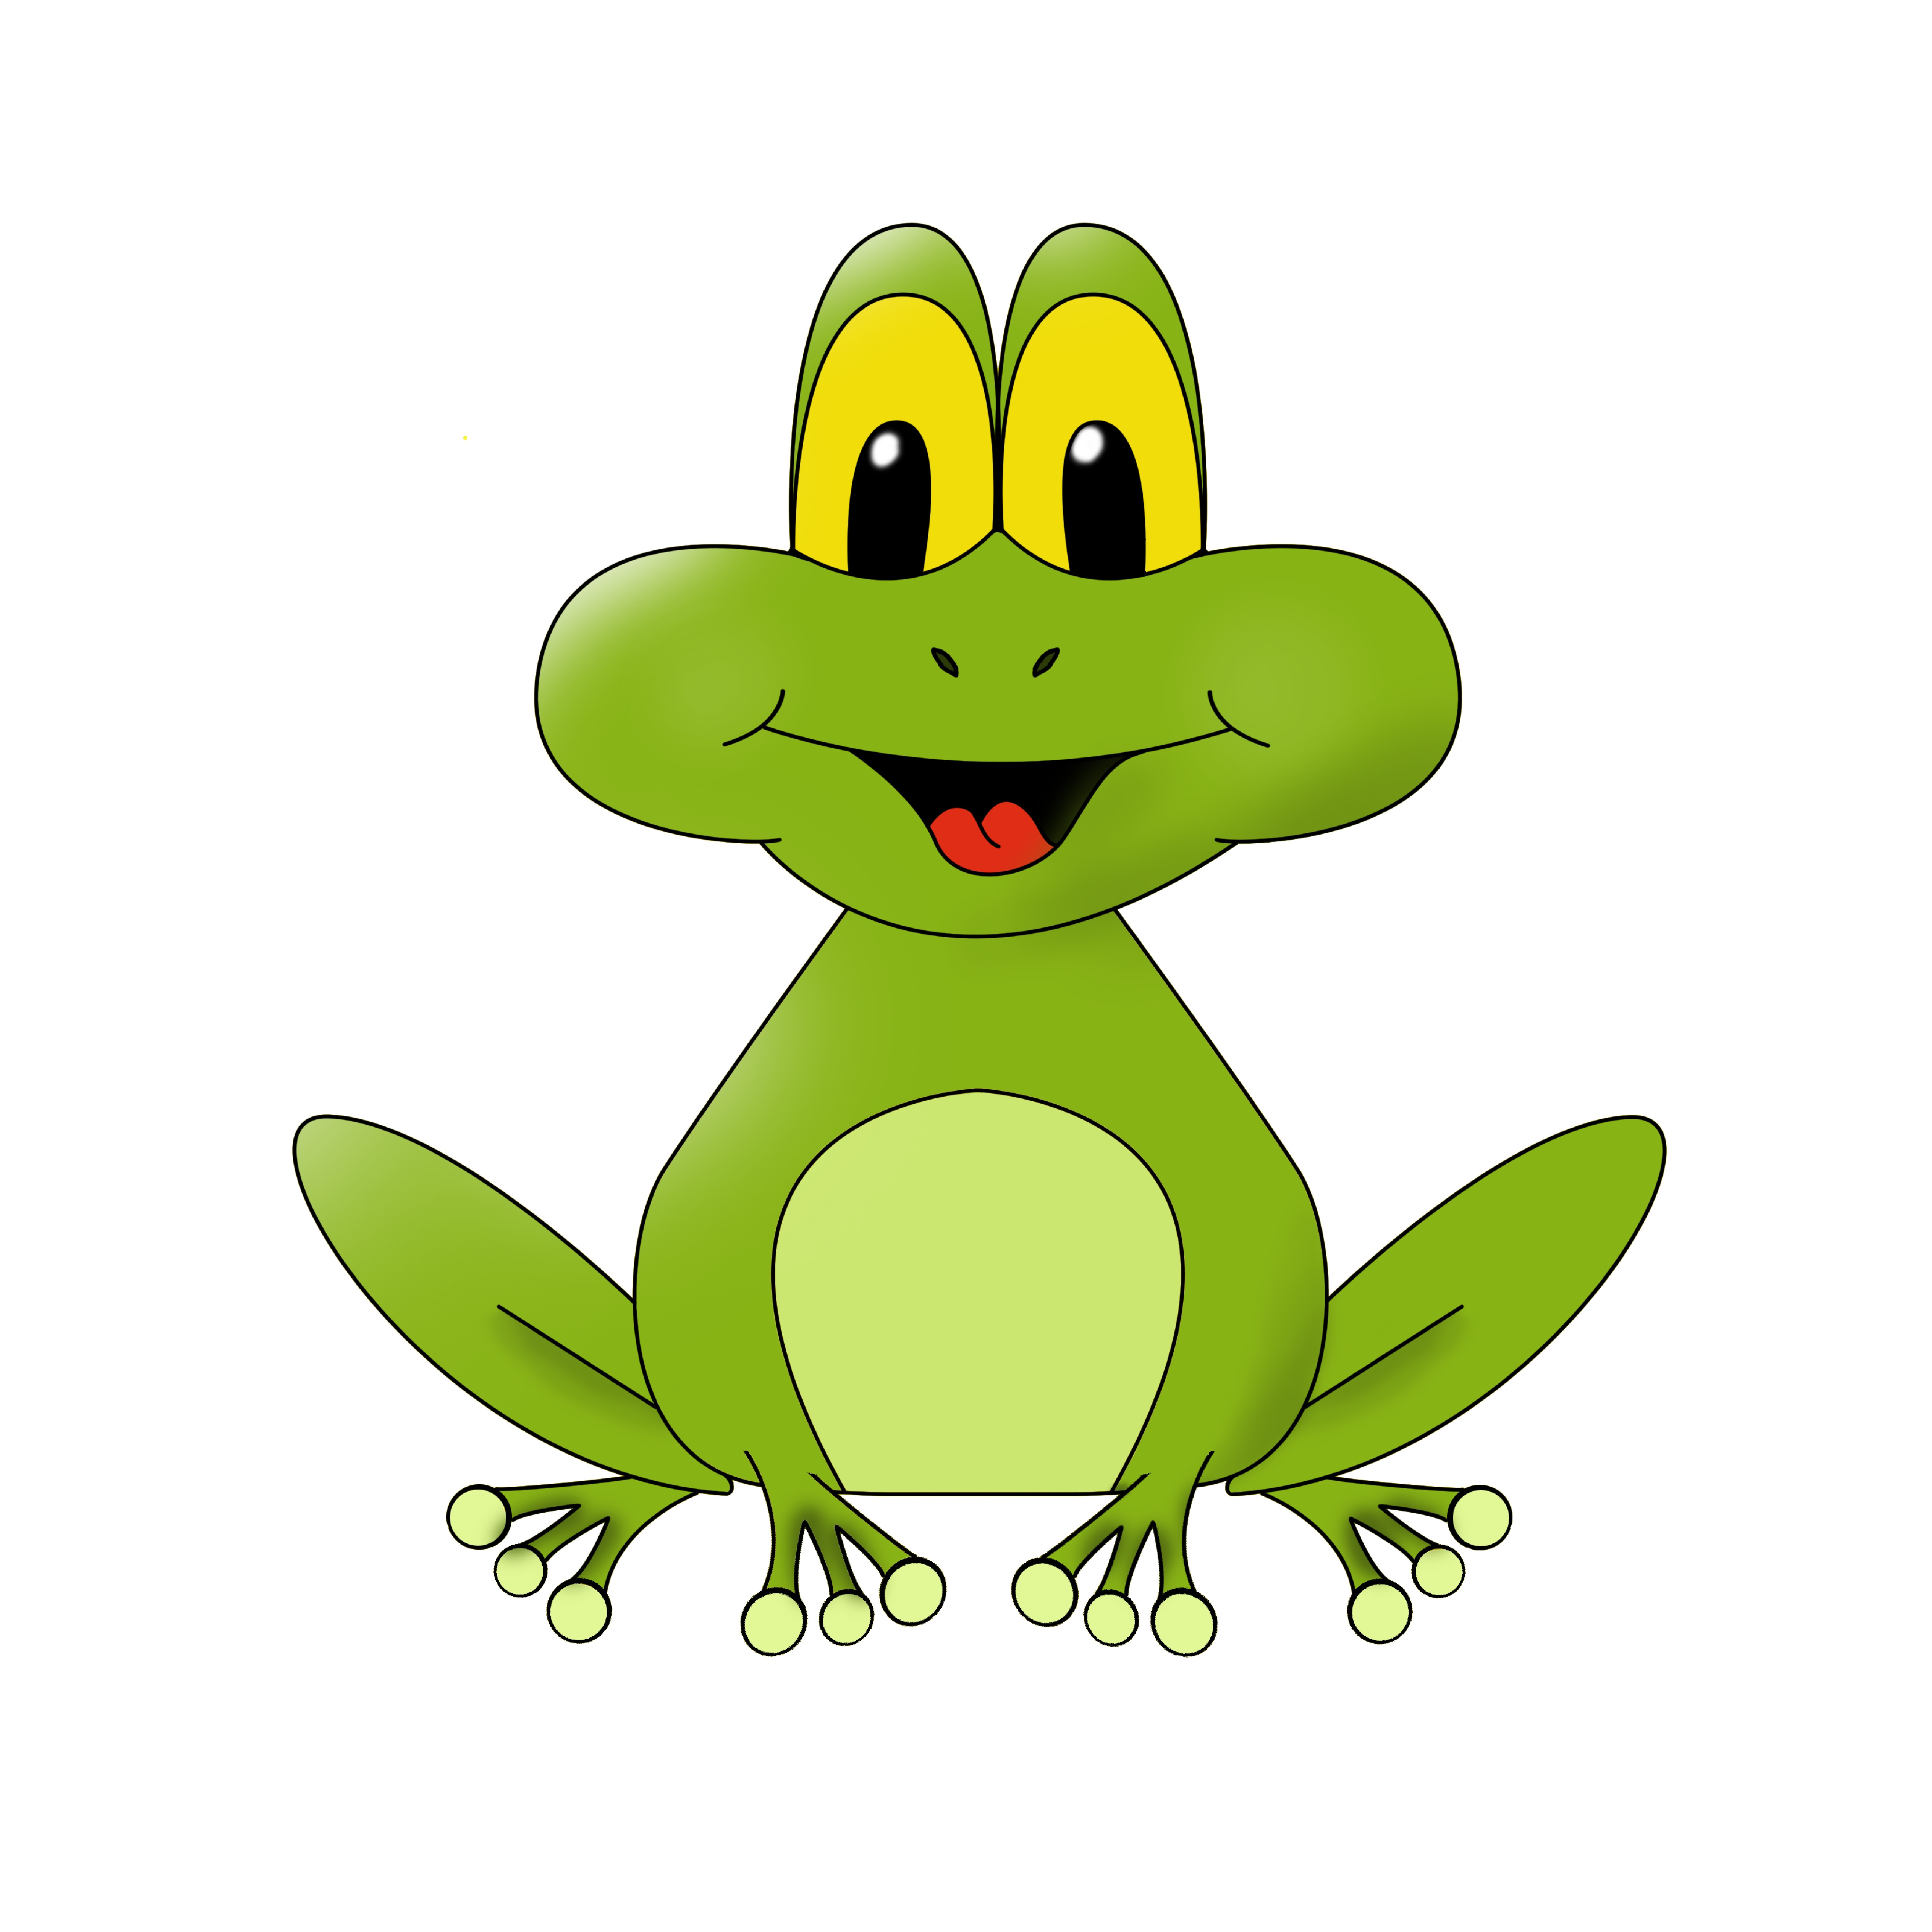 Frog Cartoon подборка фото, по теме фото.